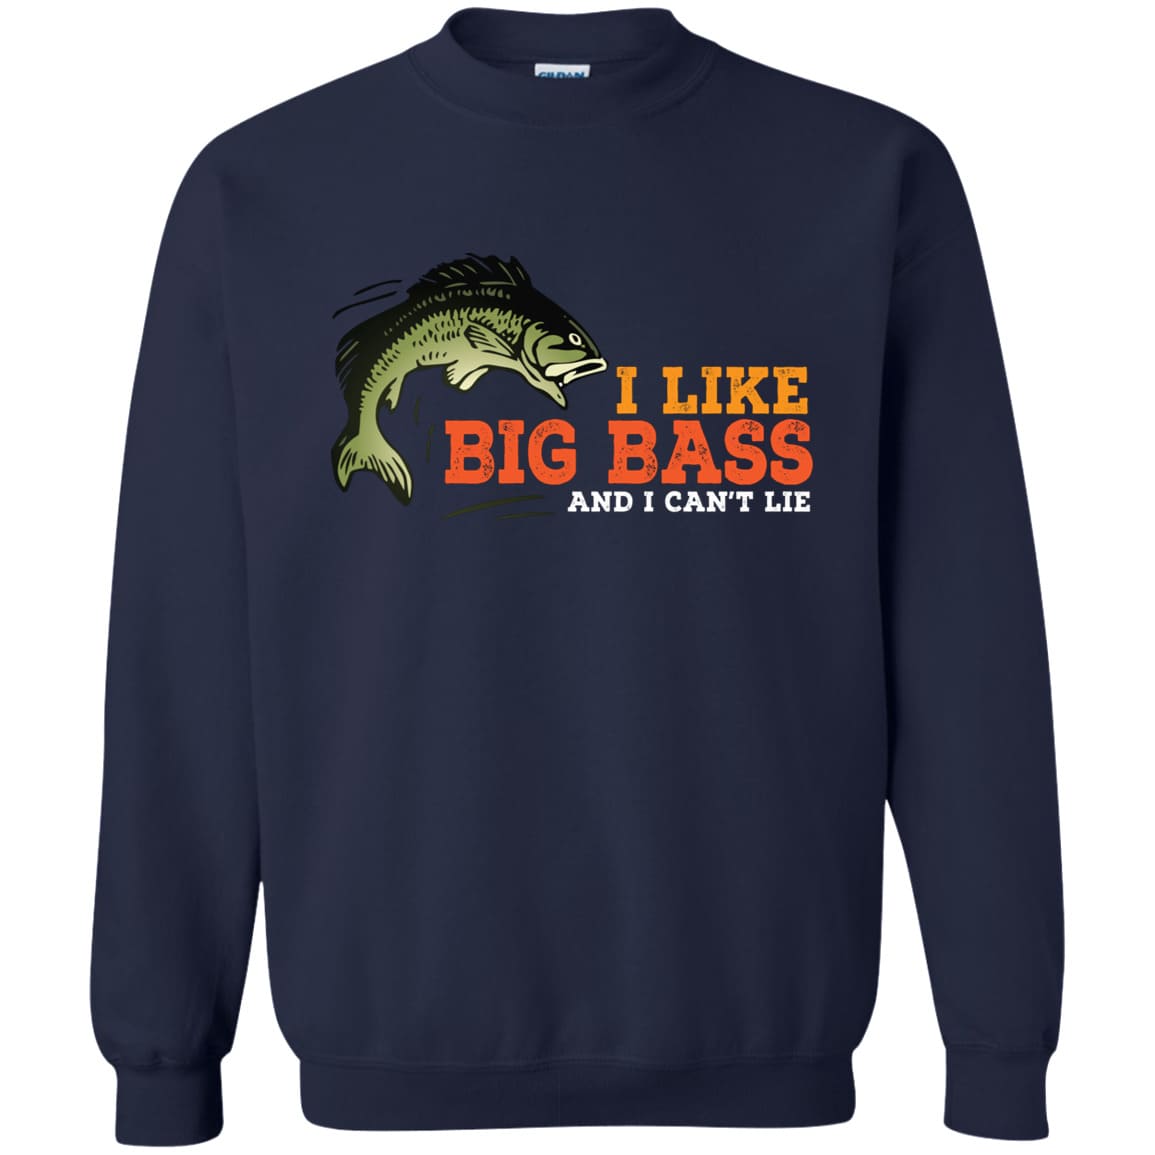 I Liike Big Bass Sweatshirt